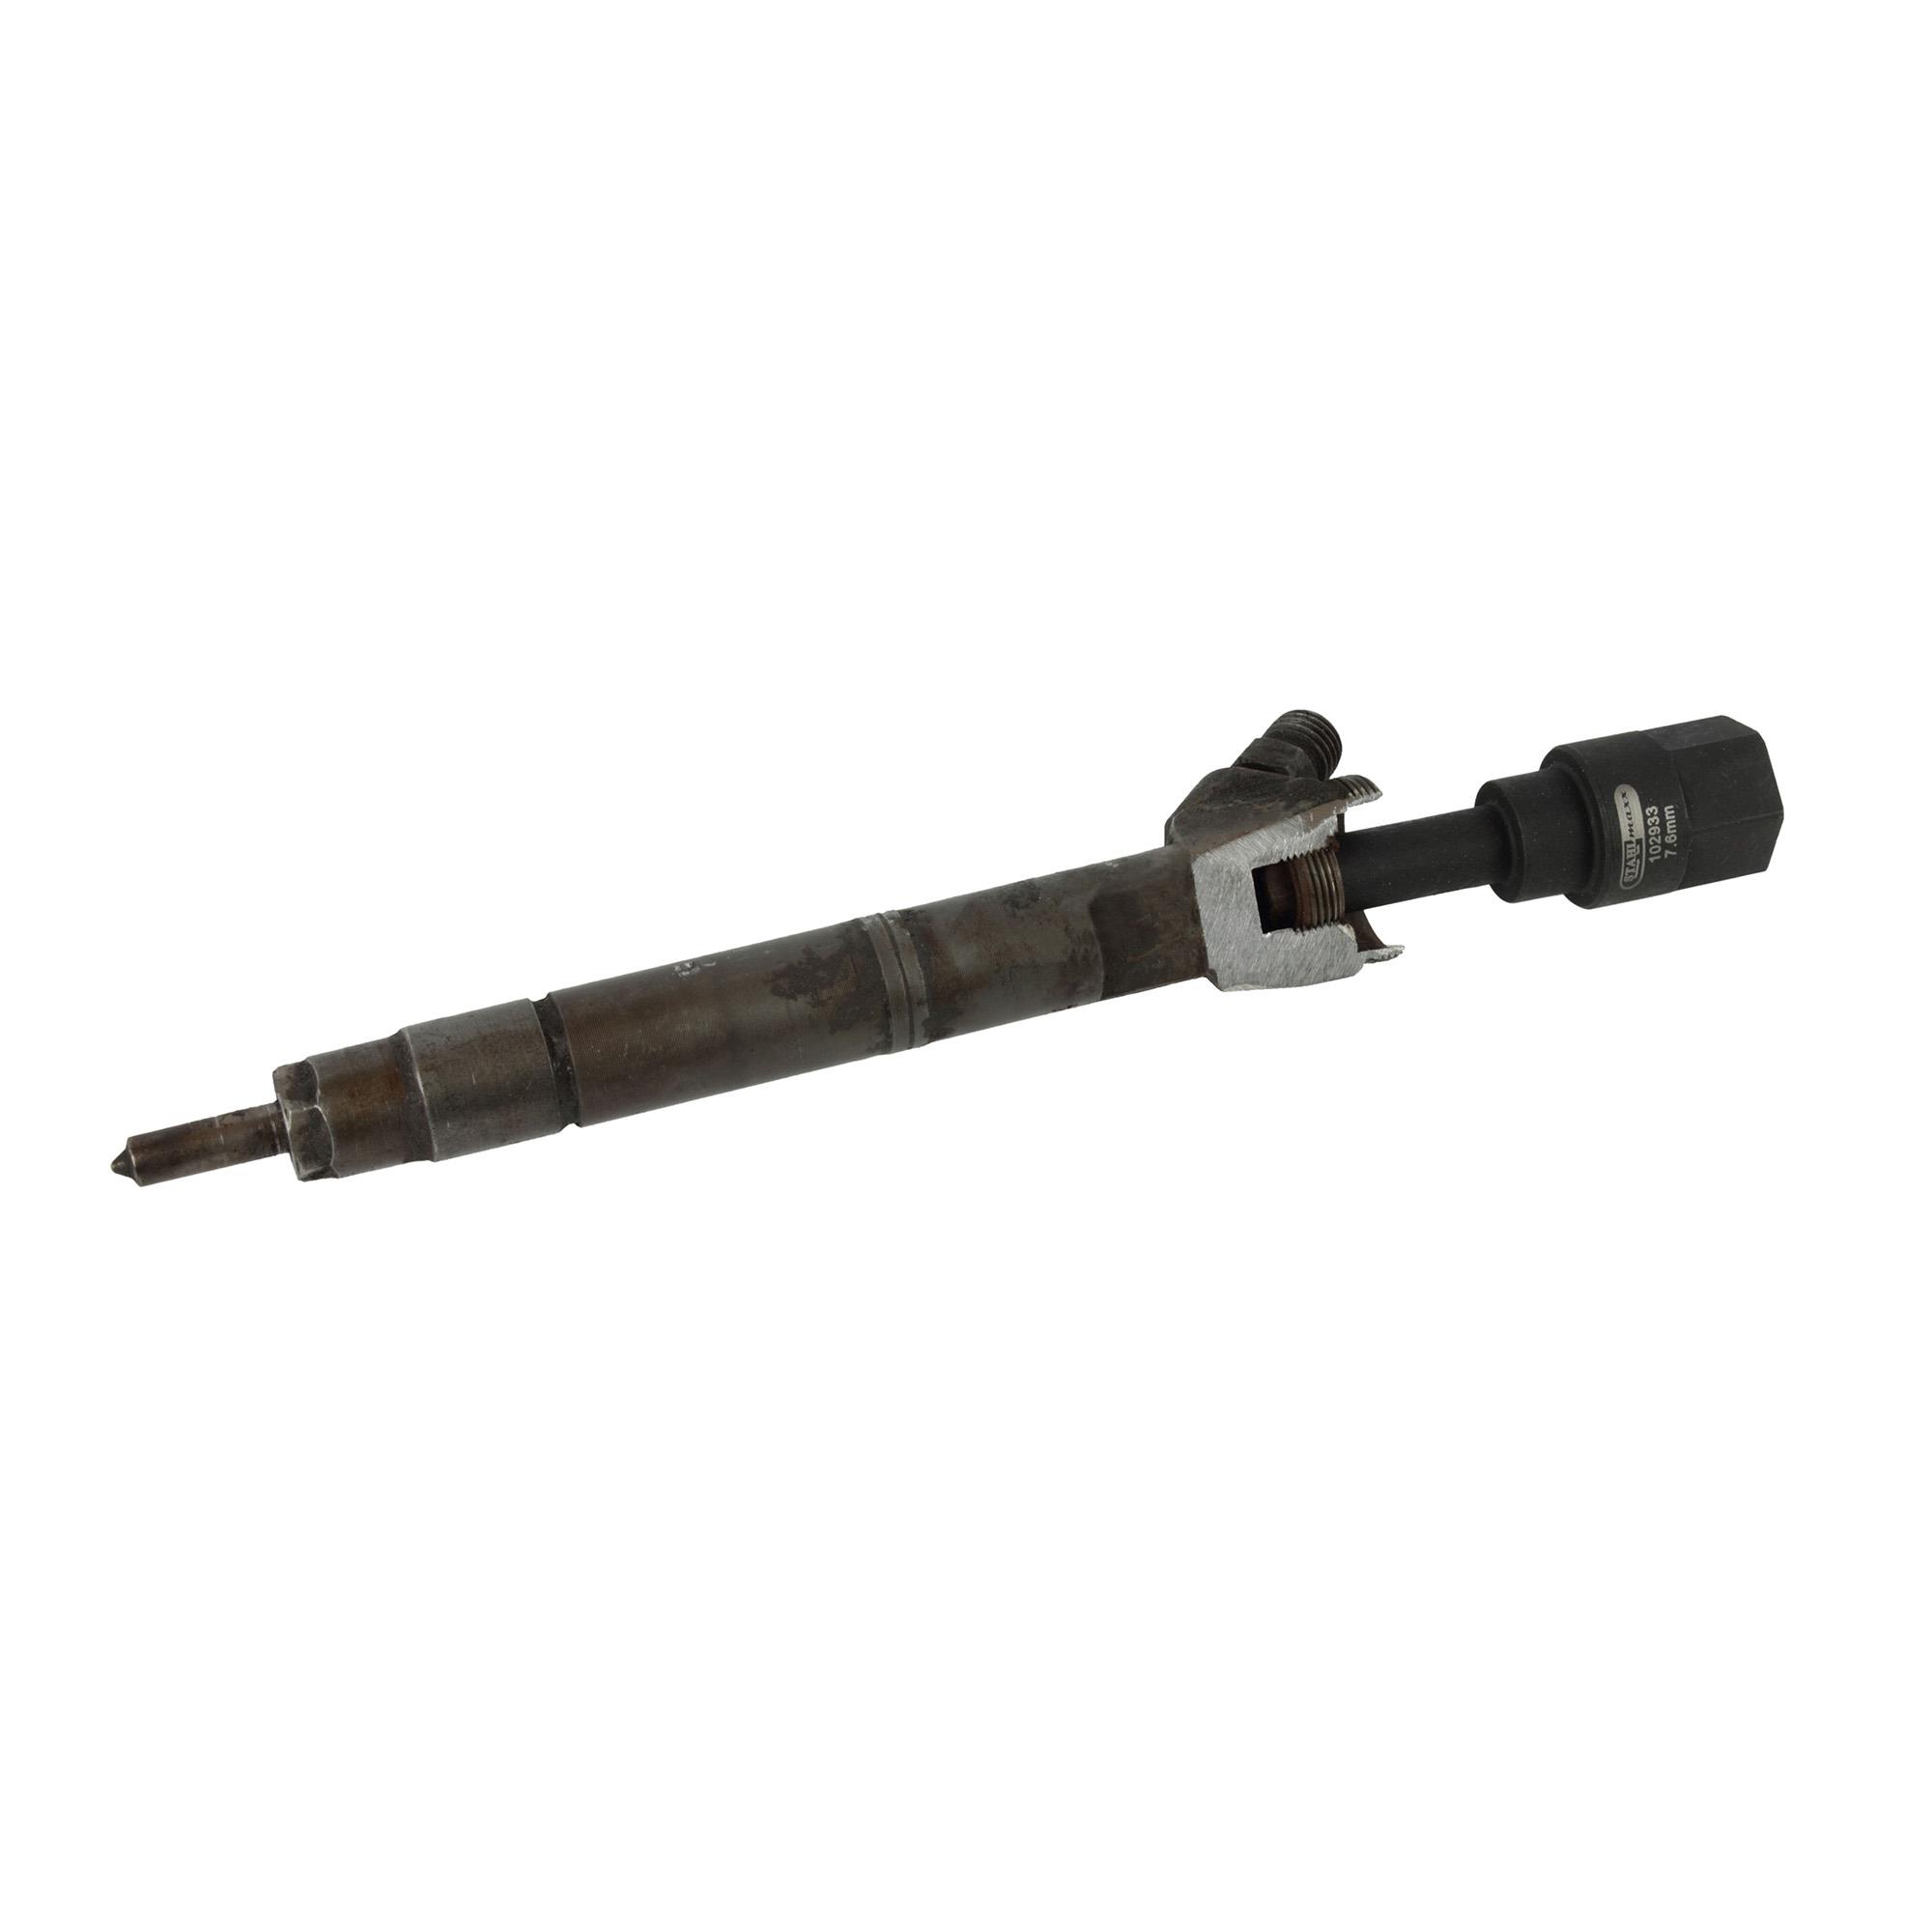 Injektor-Spezial-Bit, SW 10 mm, 1/2 Zoll